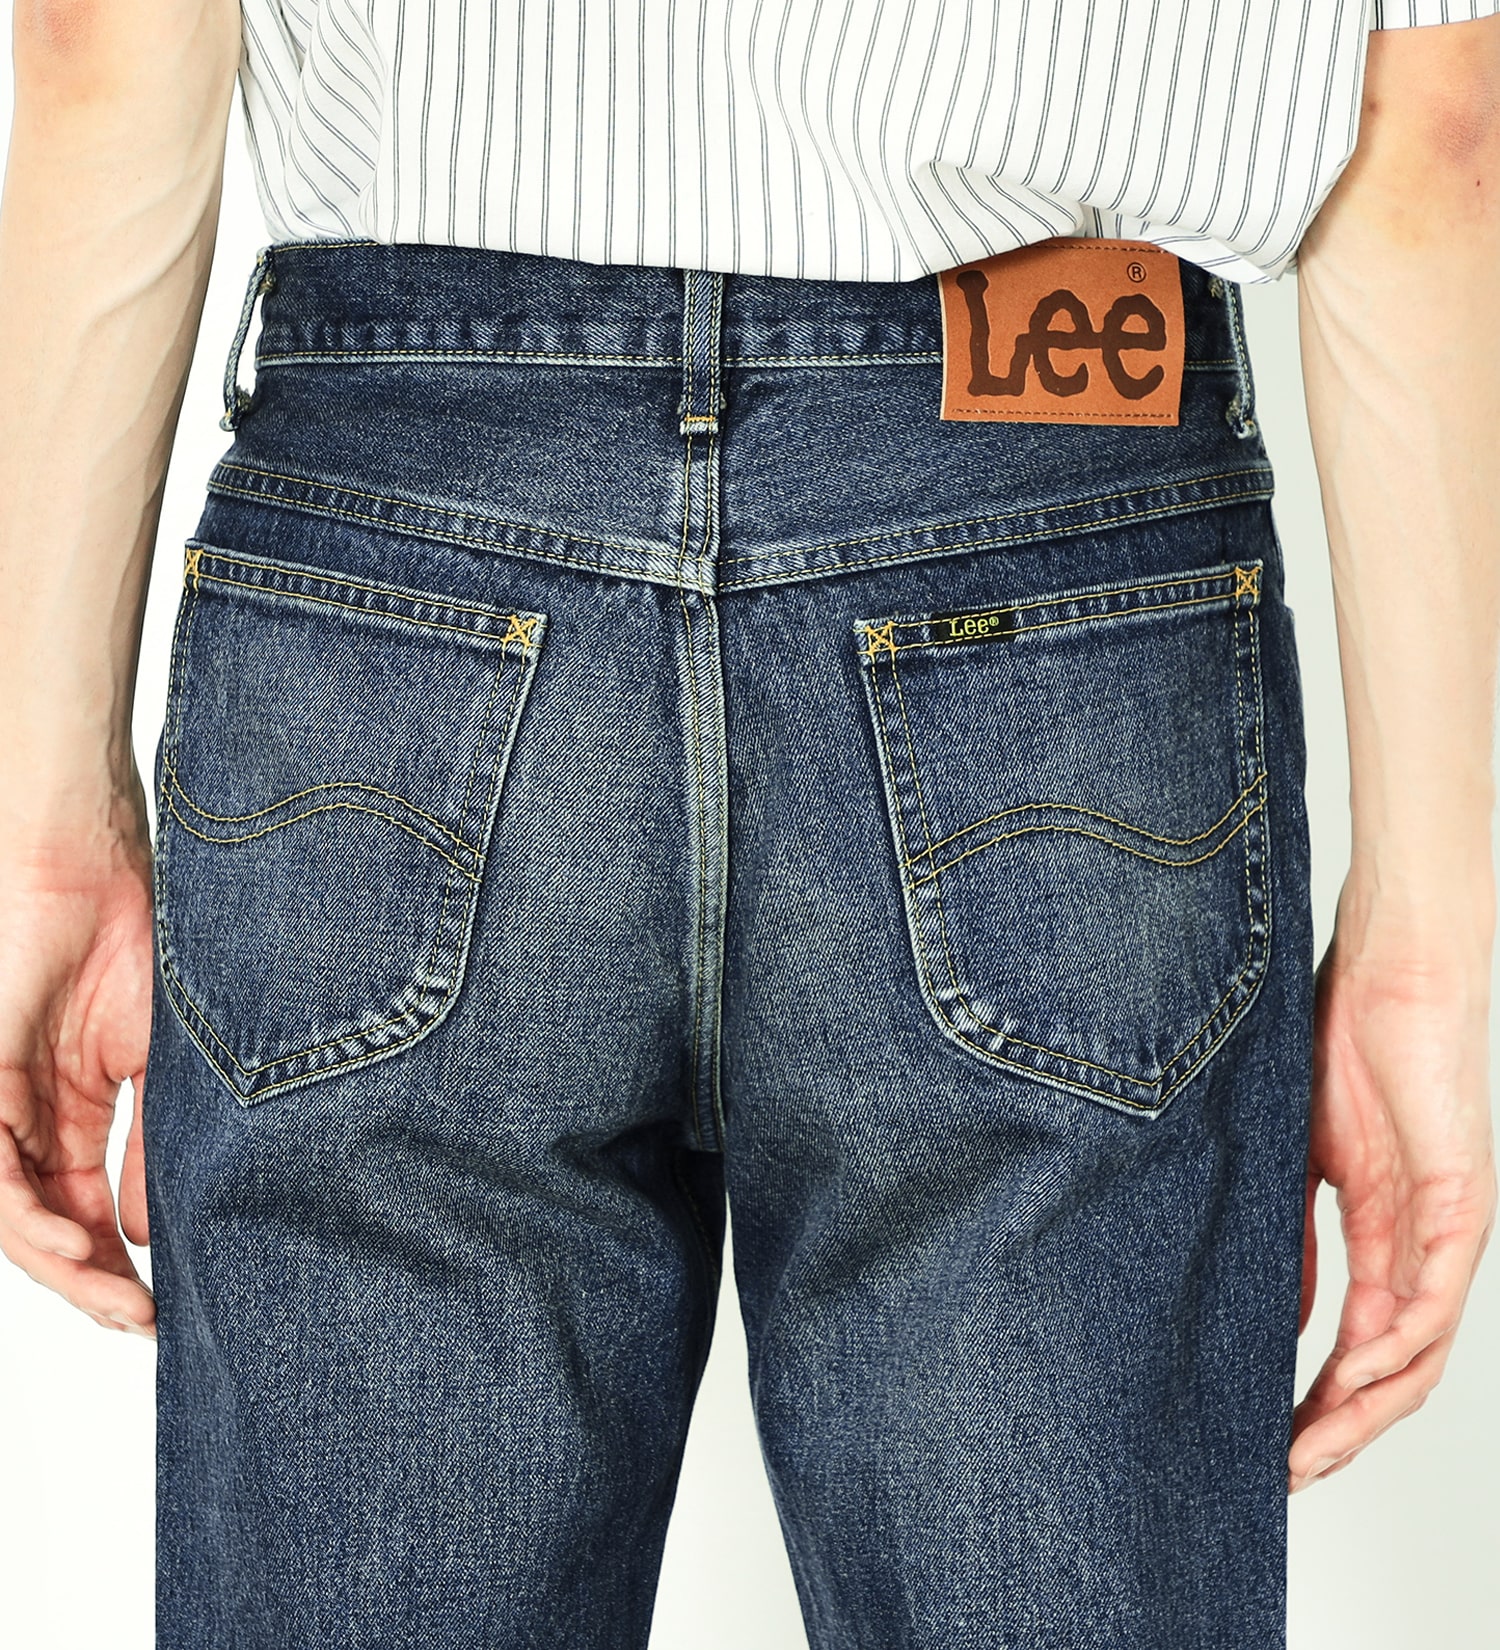 Lee(リー)のAMERICAN STANDARD 201 ストレートジーンズ|パンツ/デニムパンツ/メンズ|中色ブルー